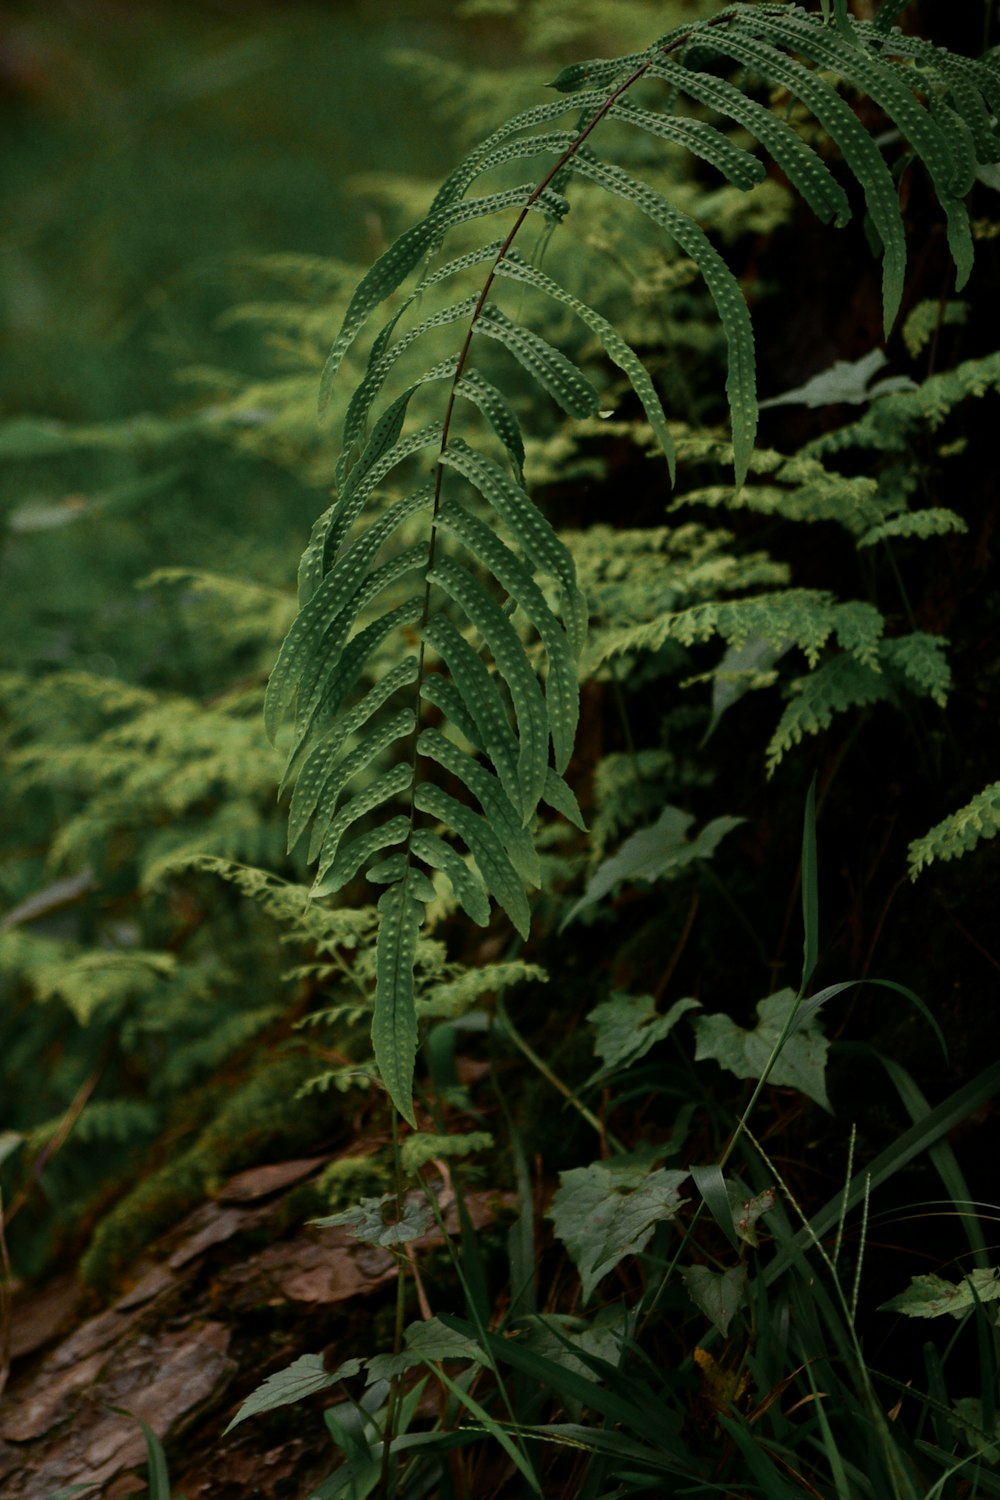 Planta de helecho verde en fotografía de primer plano